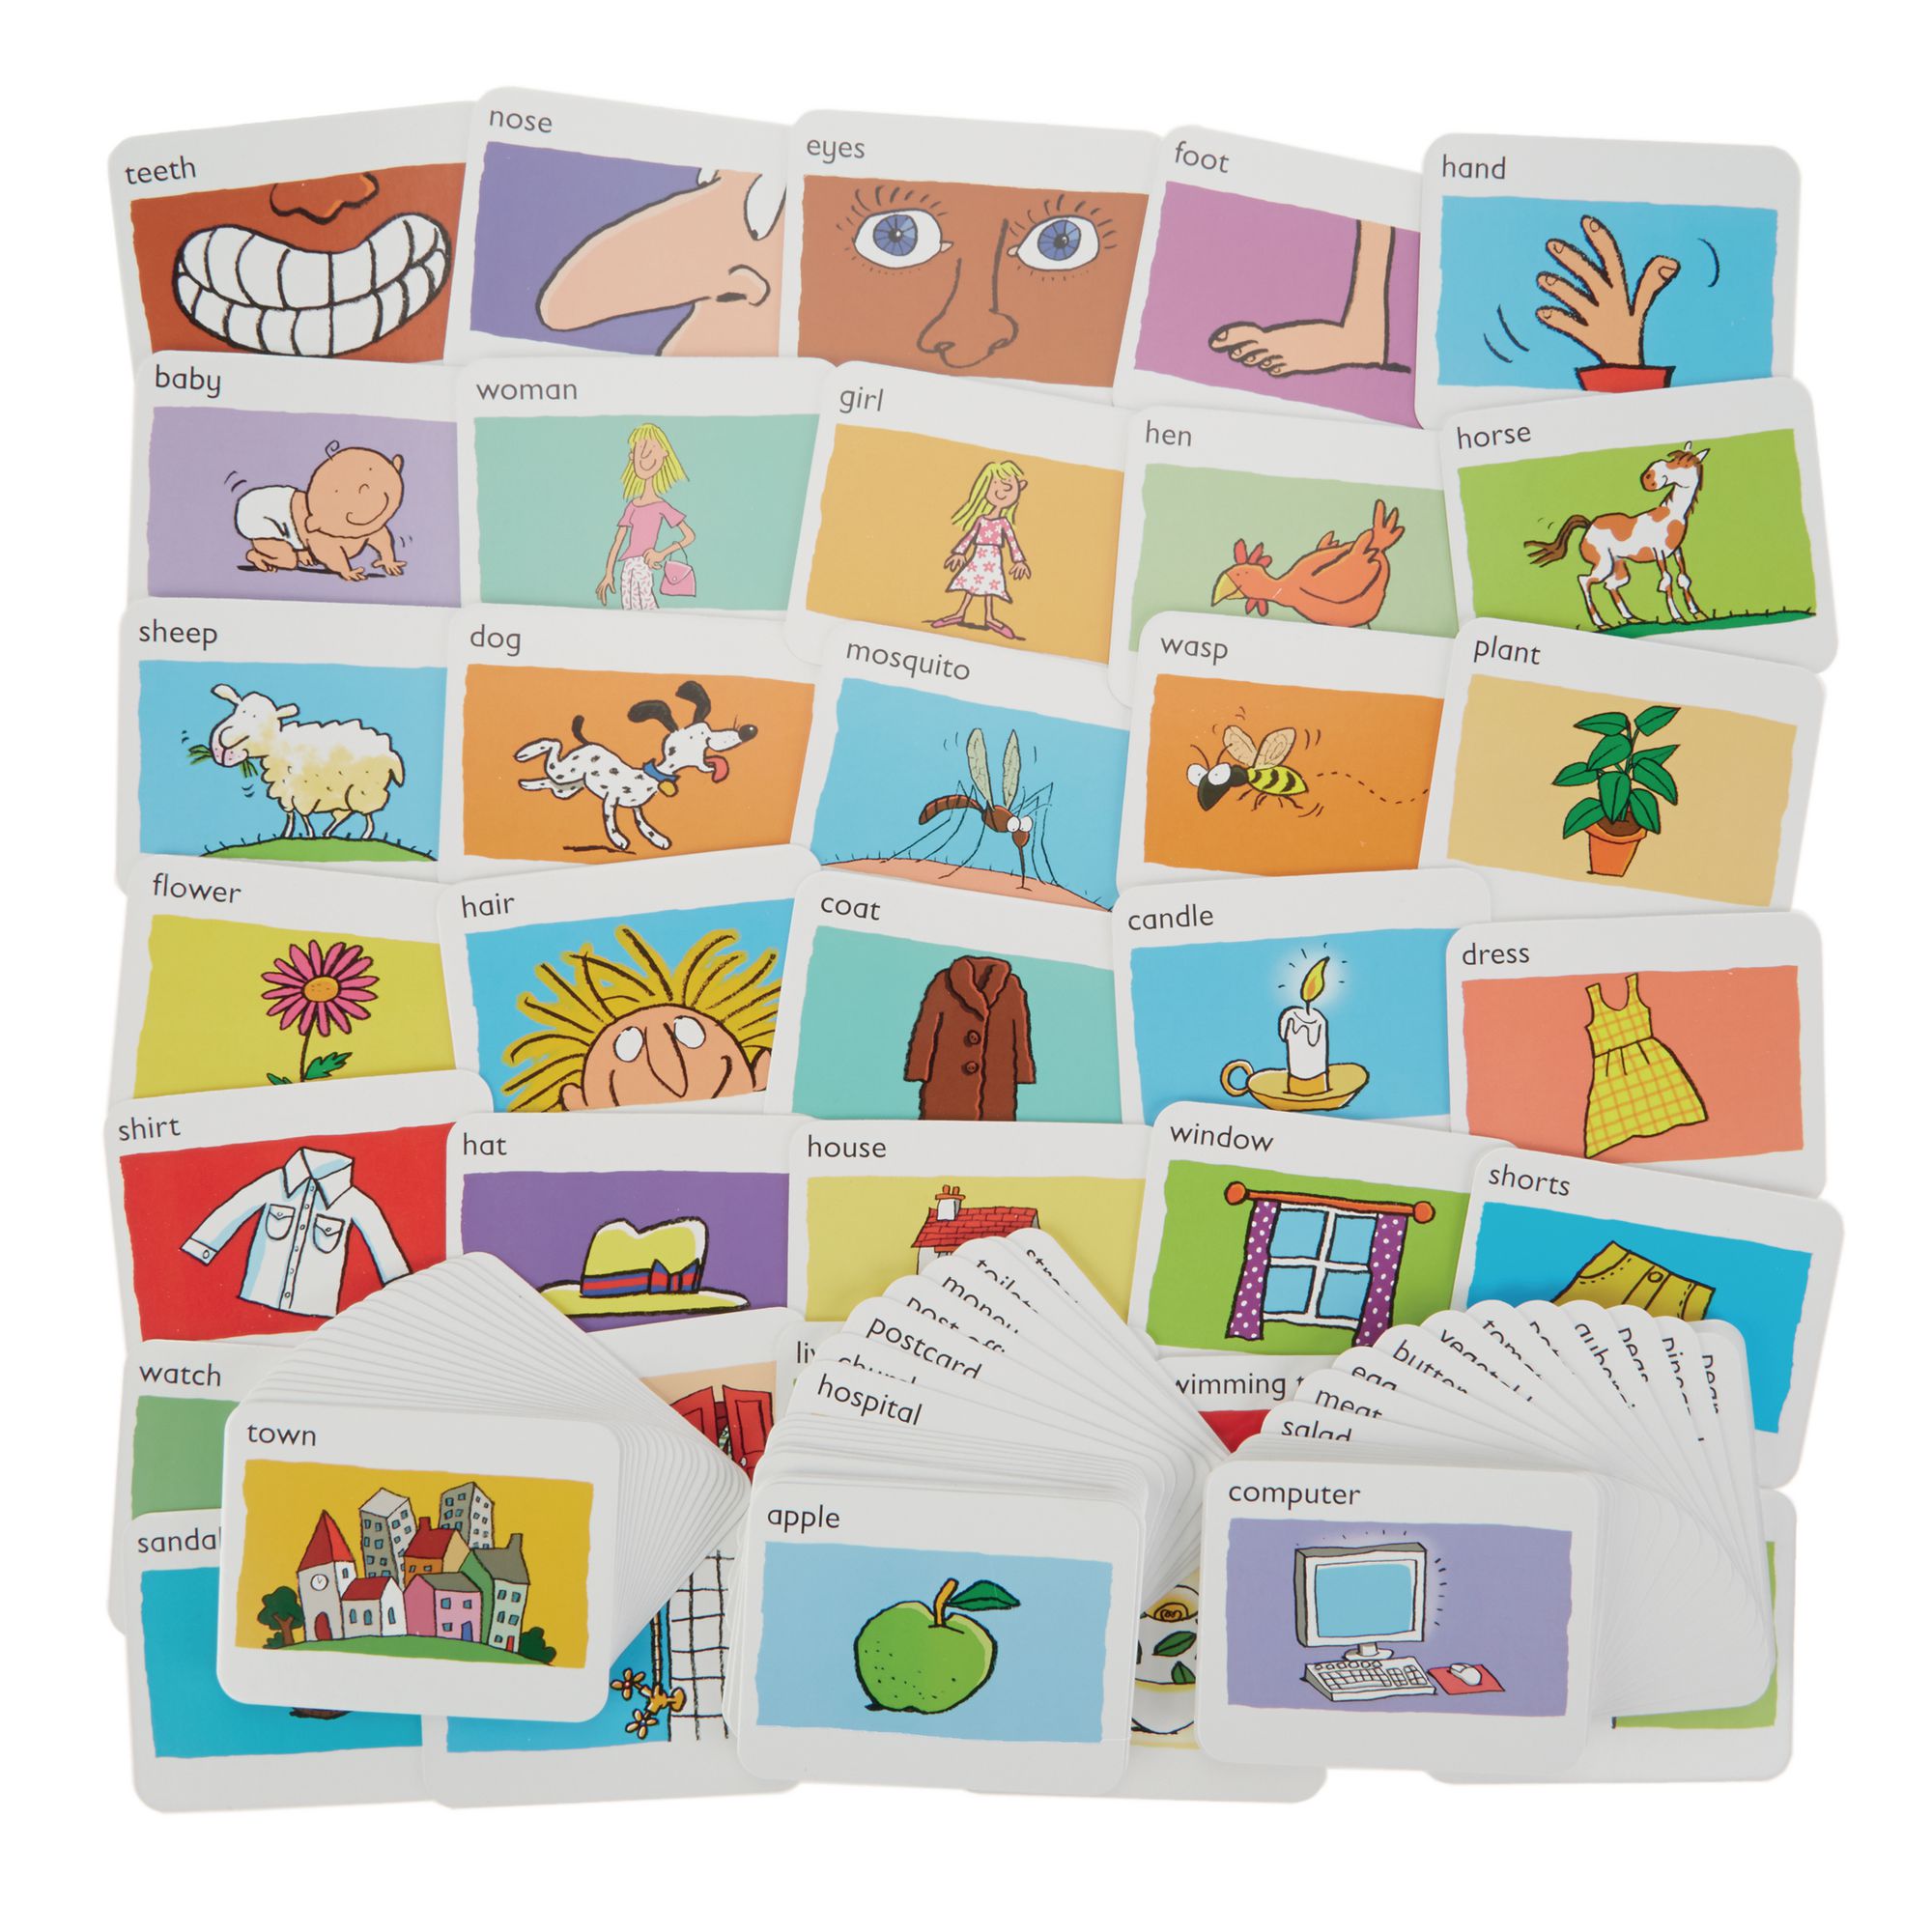 Flashcard cũng là một phương pháp học bảng chữ cái tiếng Anh được nhiều người sử dụng